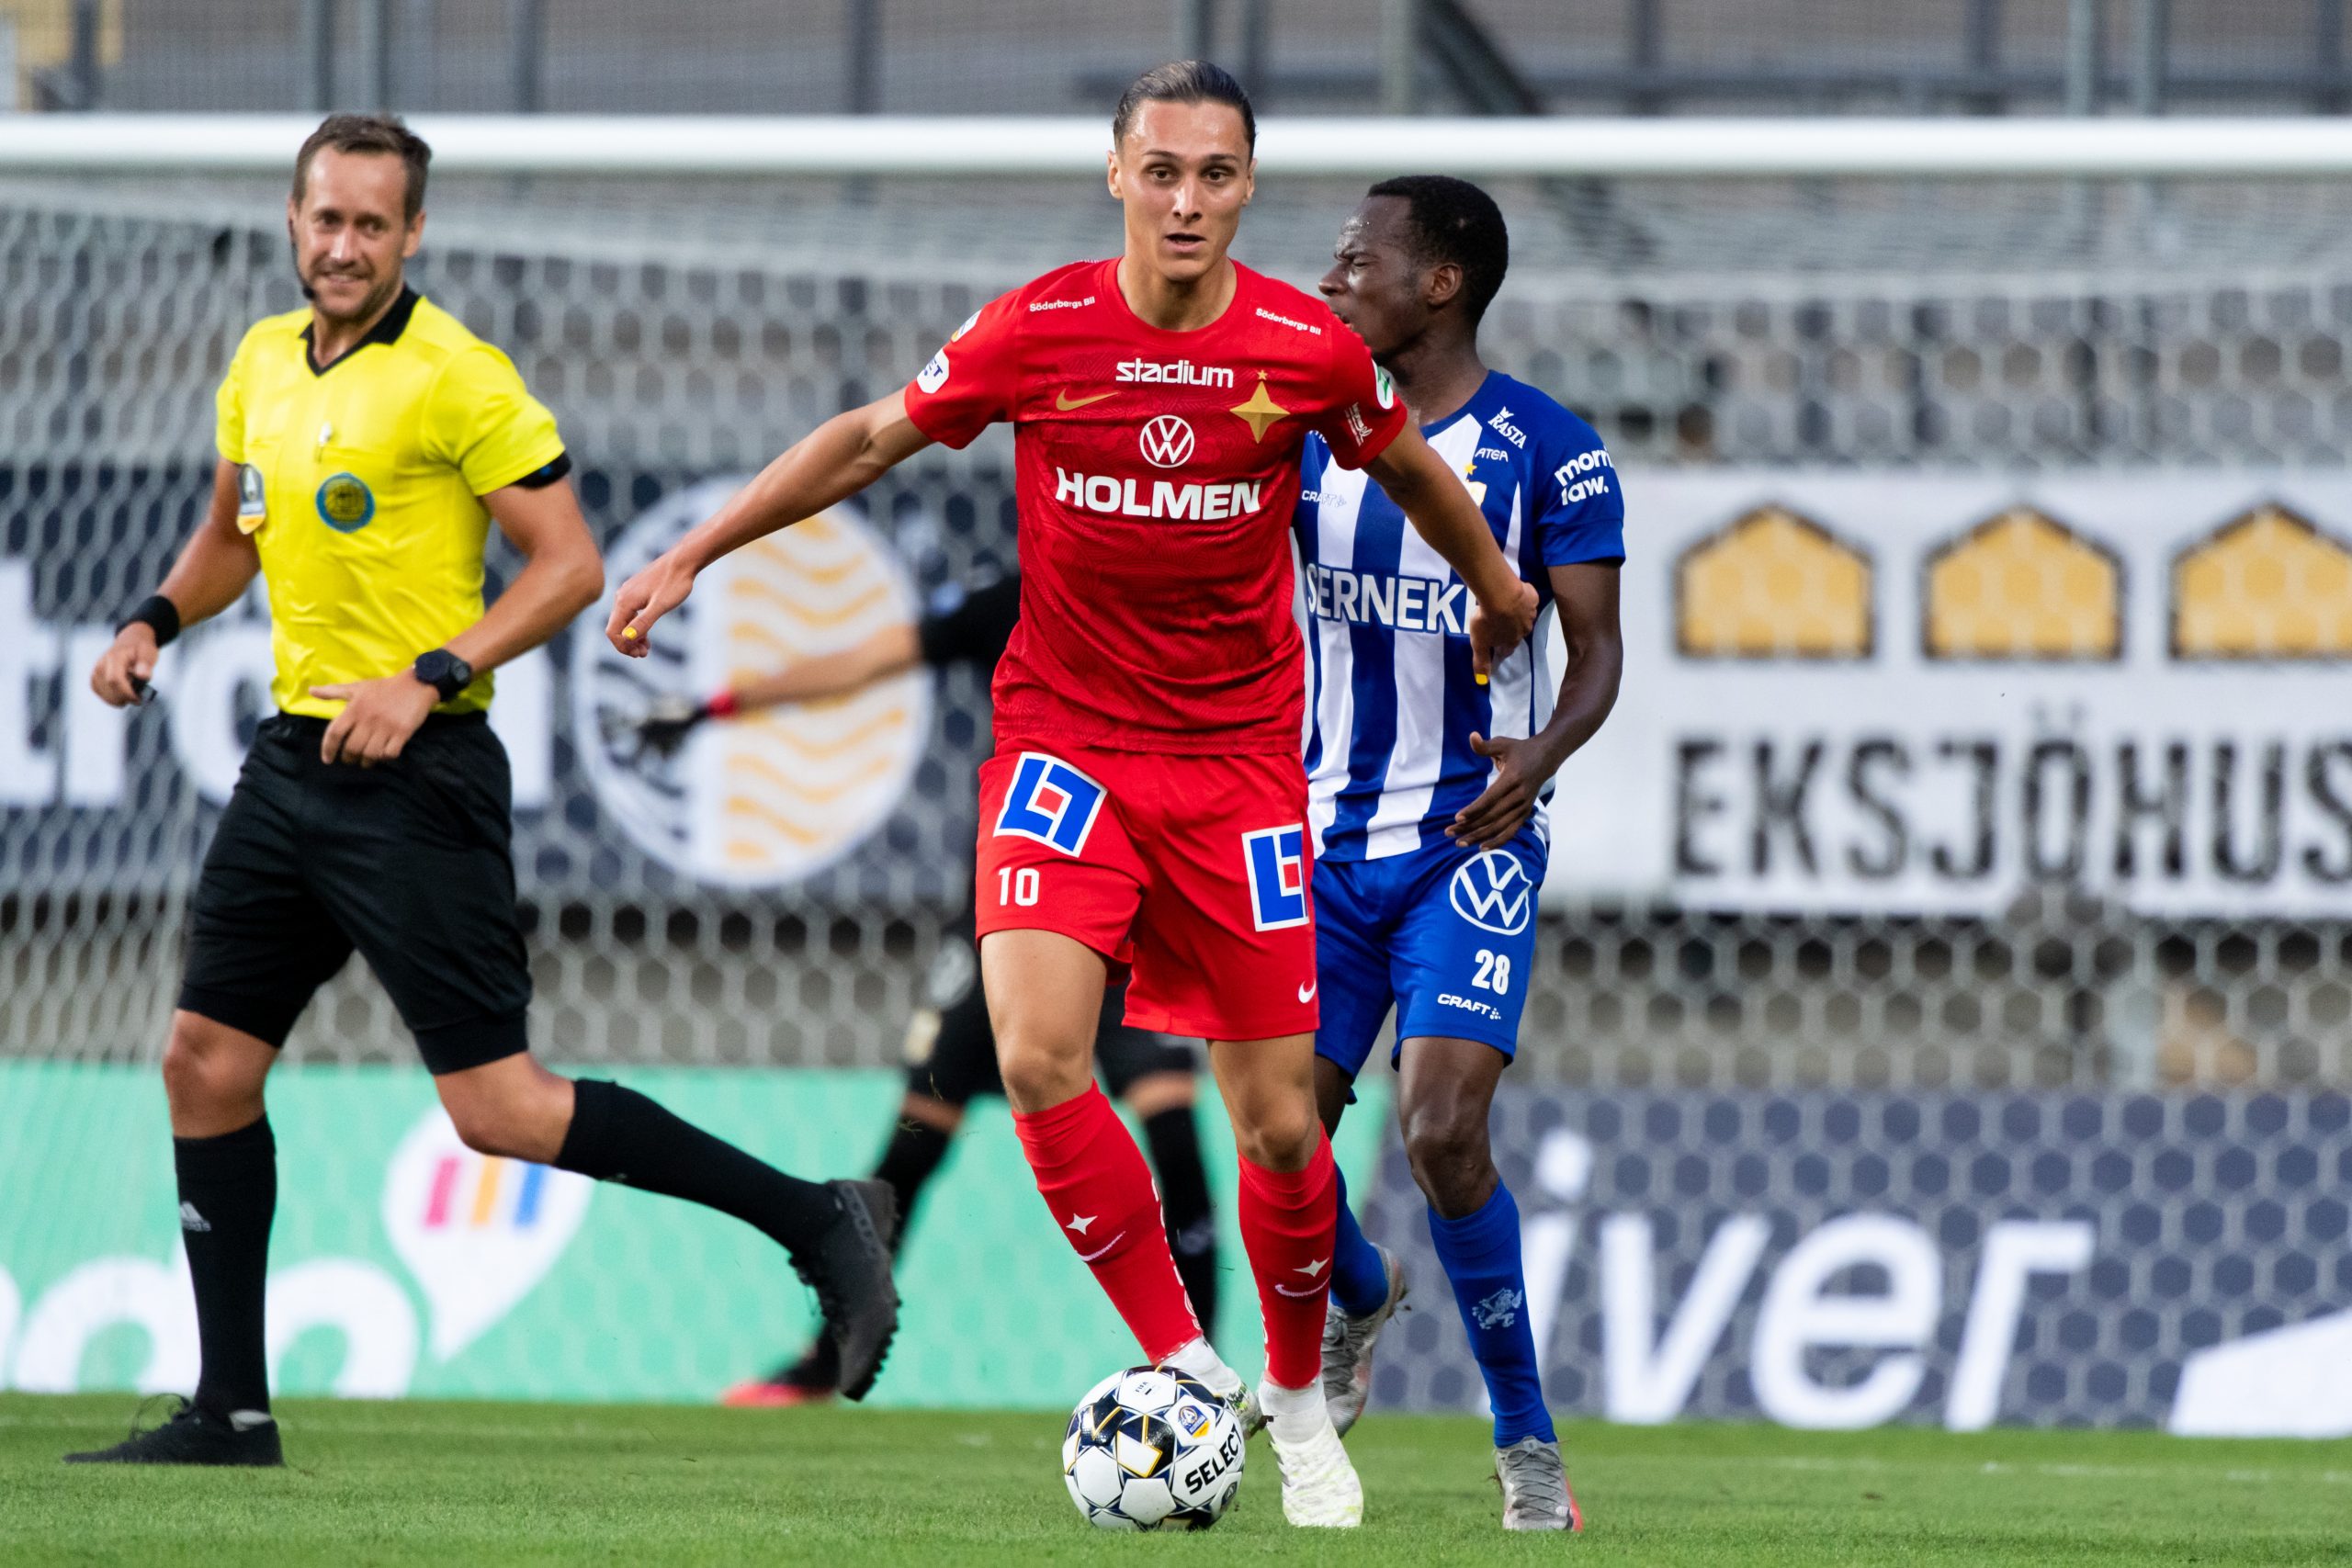 Efterlängtad seger i Göteborg | IFK Norrköping